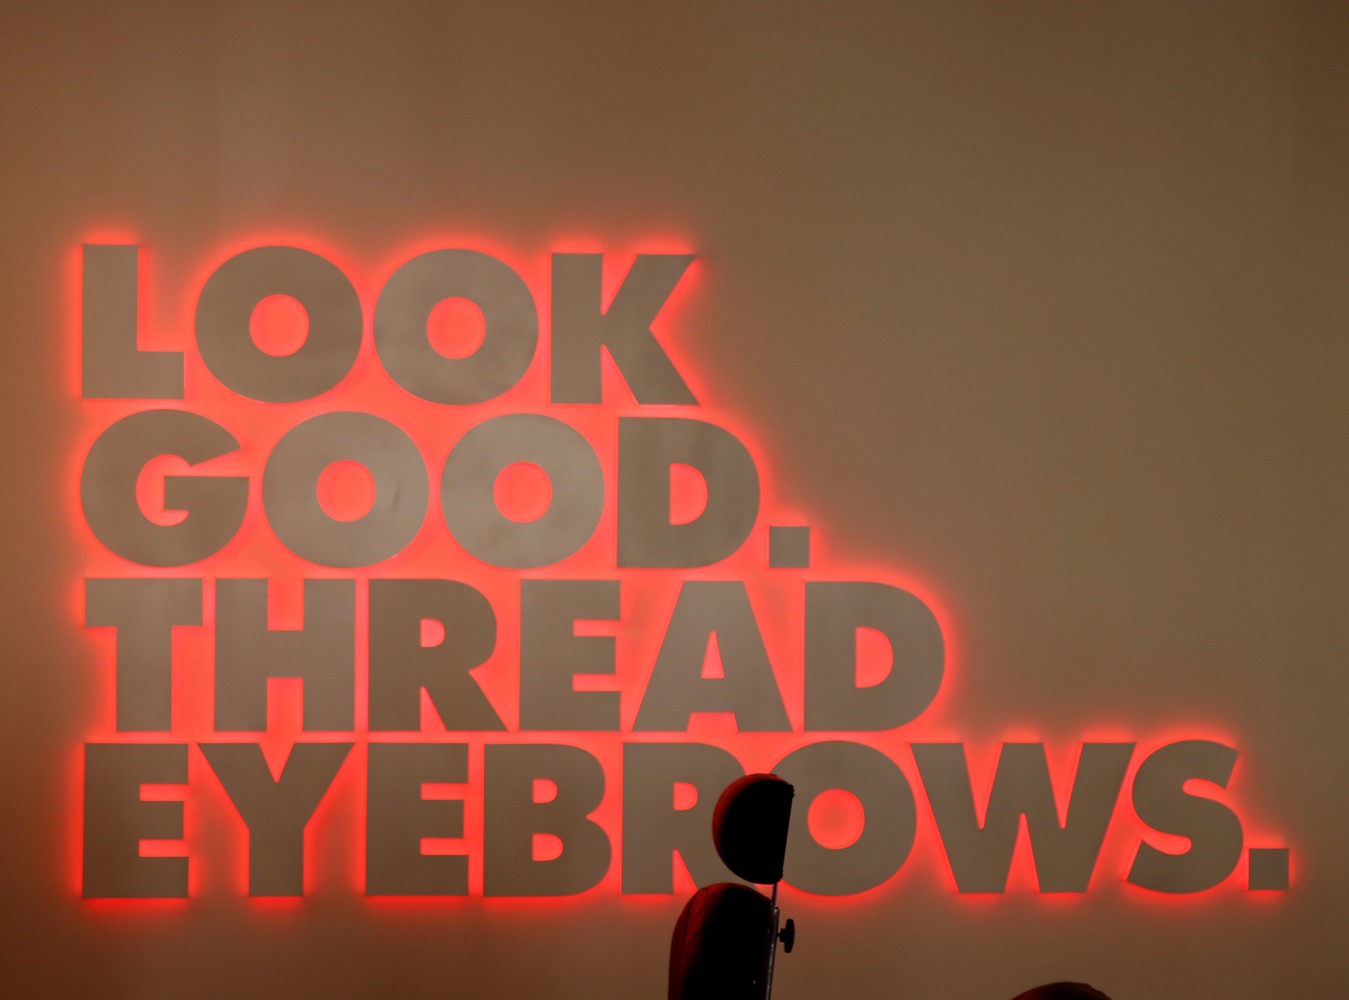 Thread Eyebrows Studio City Los Angeles